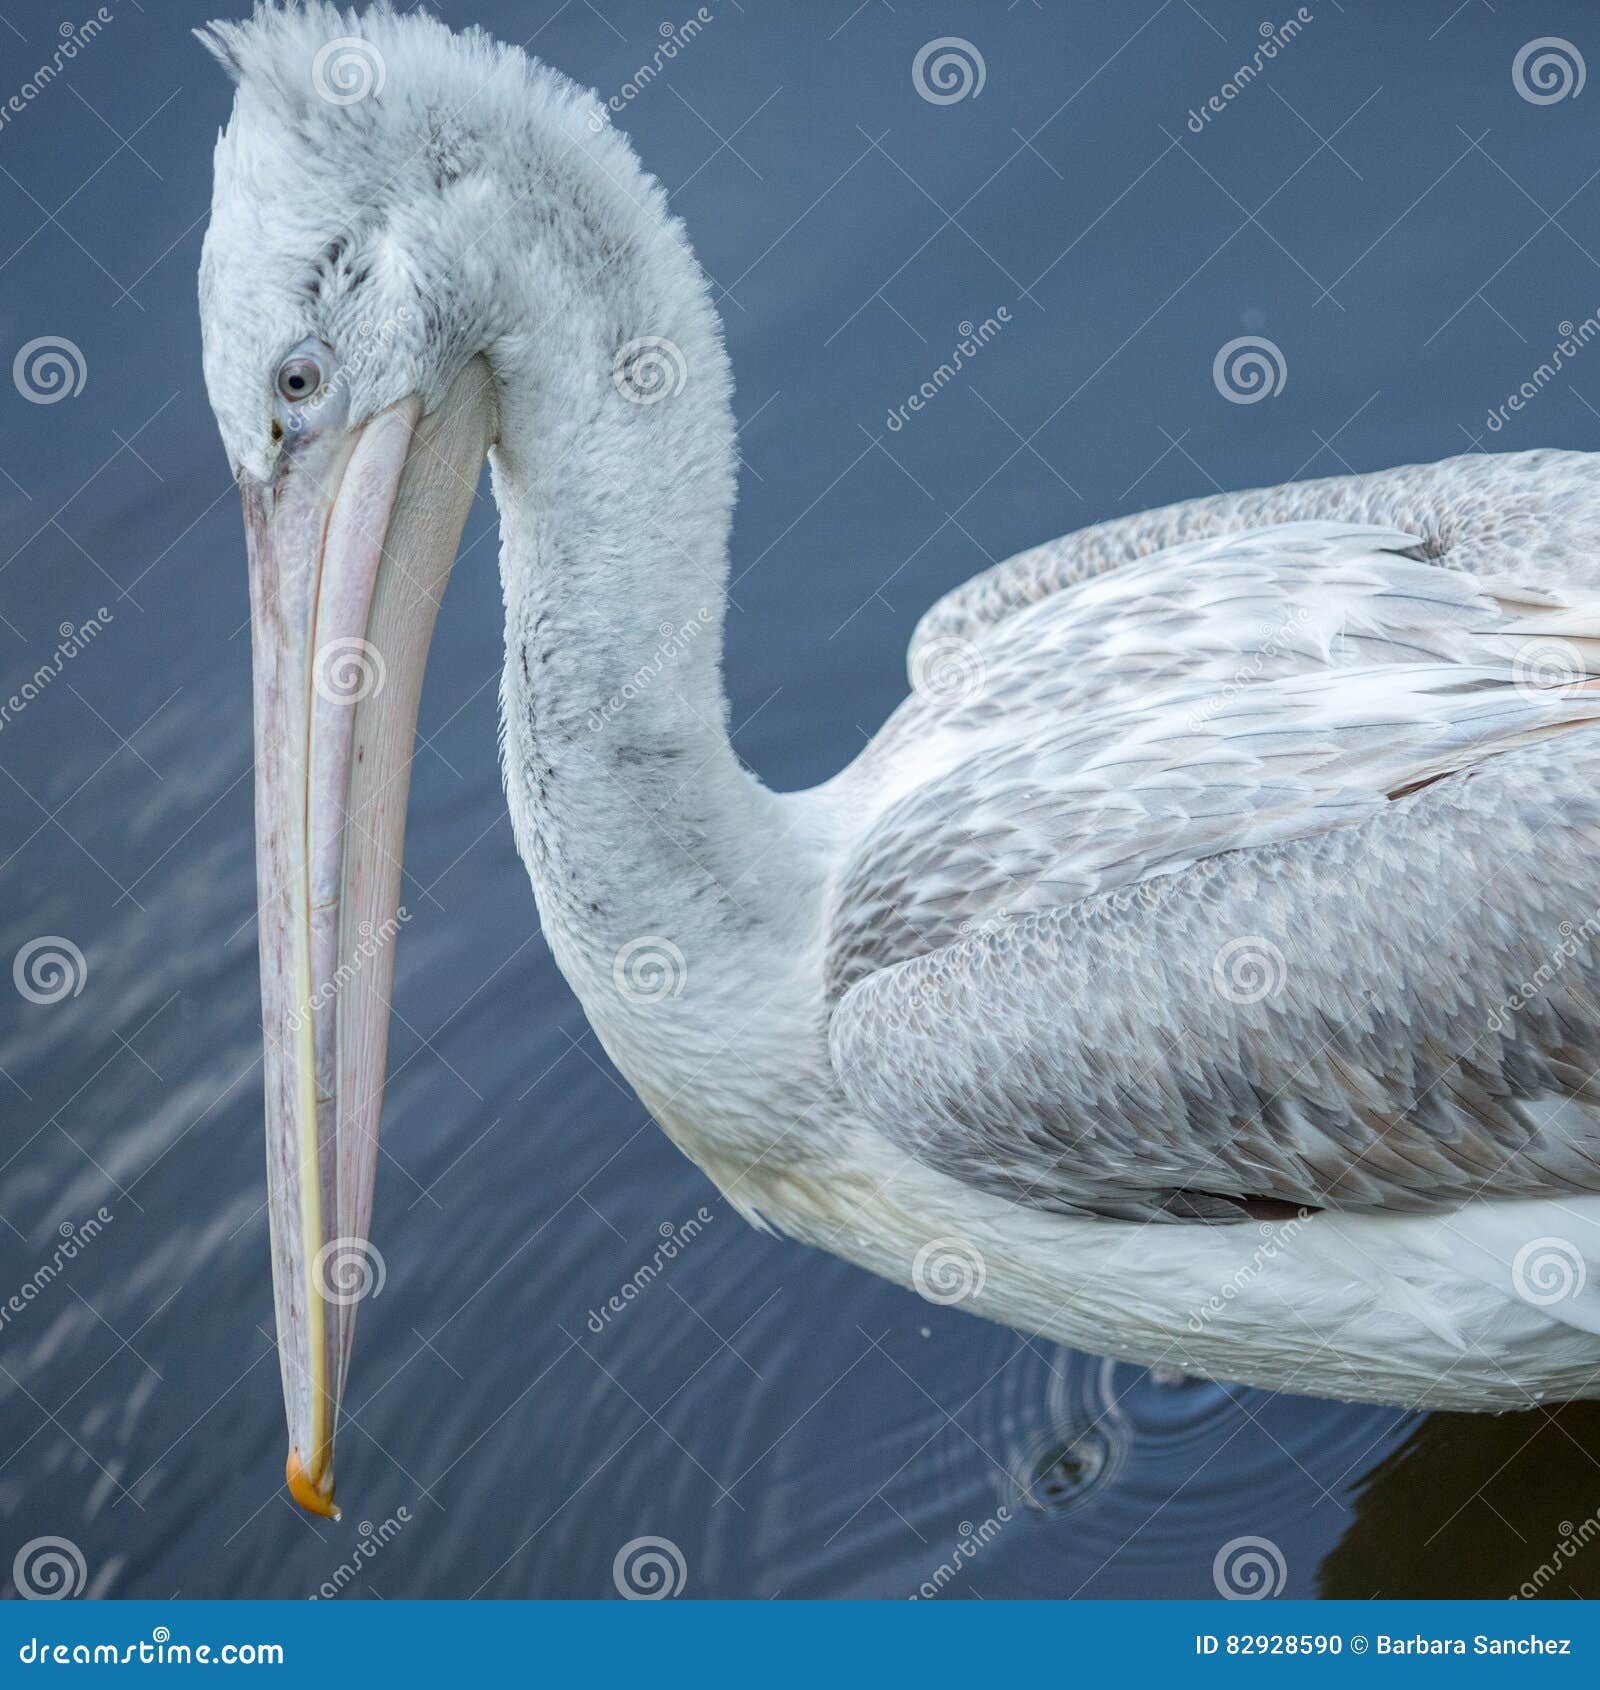 bird pelican head, texture,